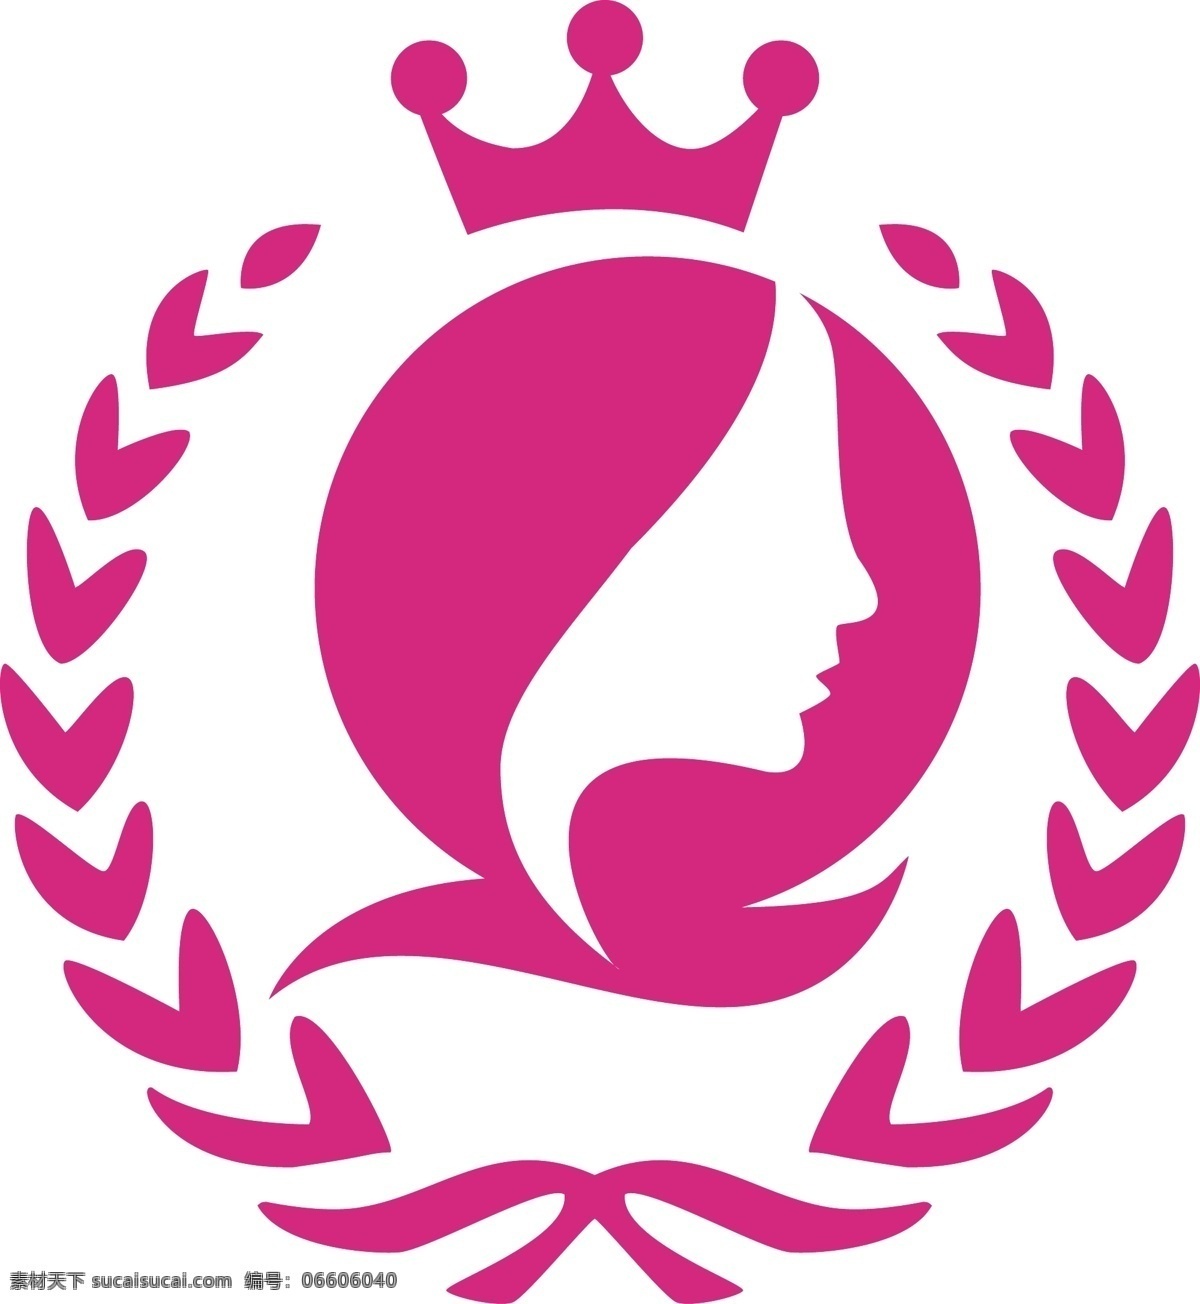 女性 服装 logo 服装logo 女性logo 女人logo 女性标志 标志图标 企业 标志